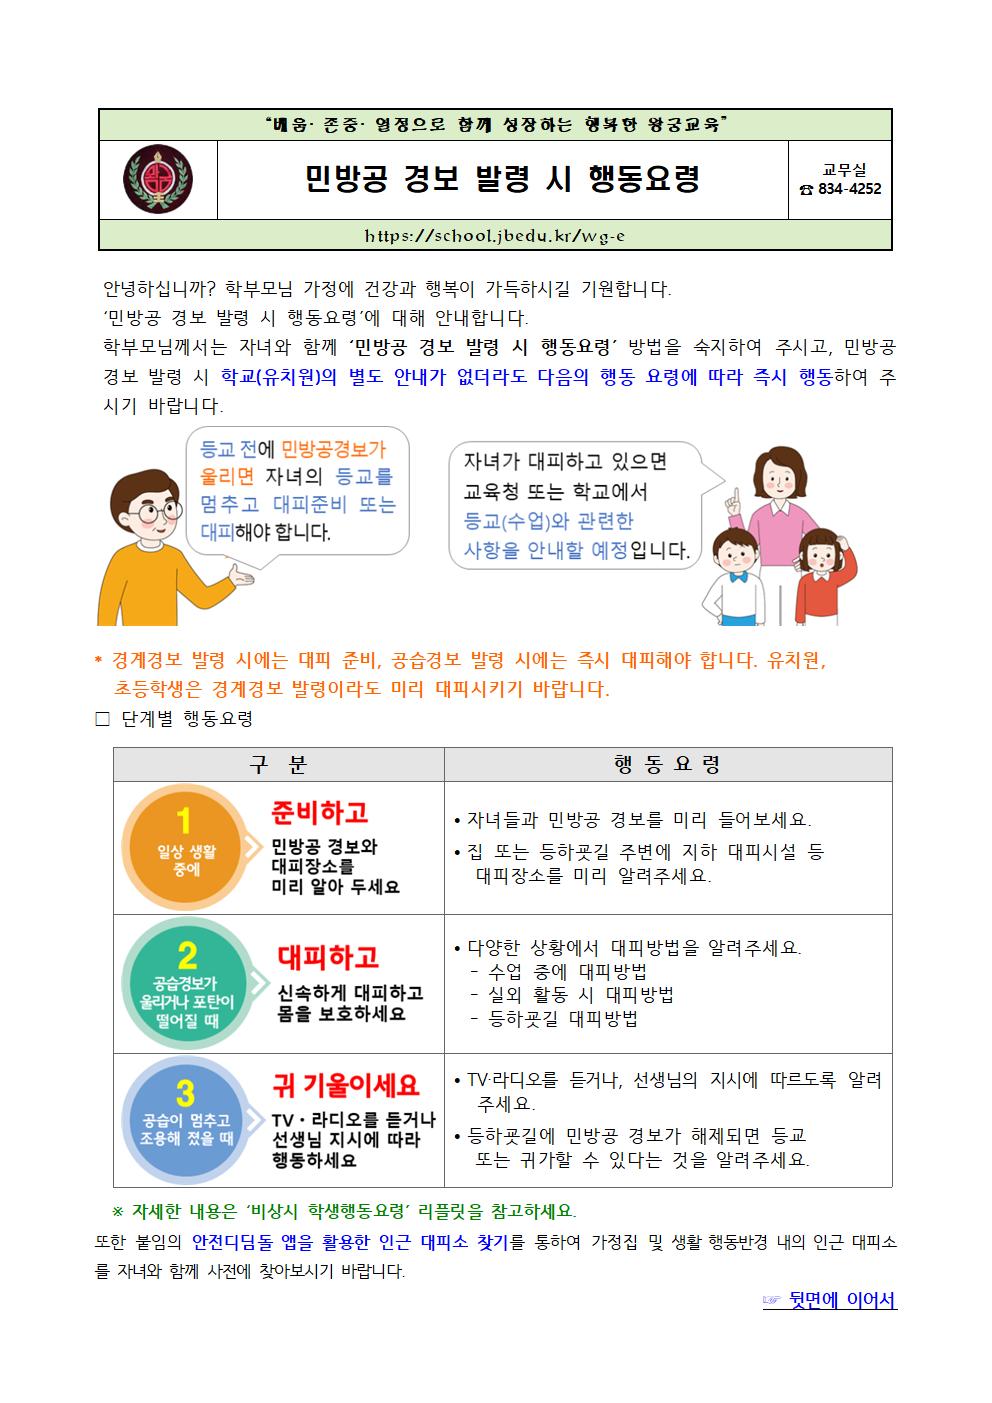 민방공 경보 발령 시 행동요령 가정통신문001